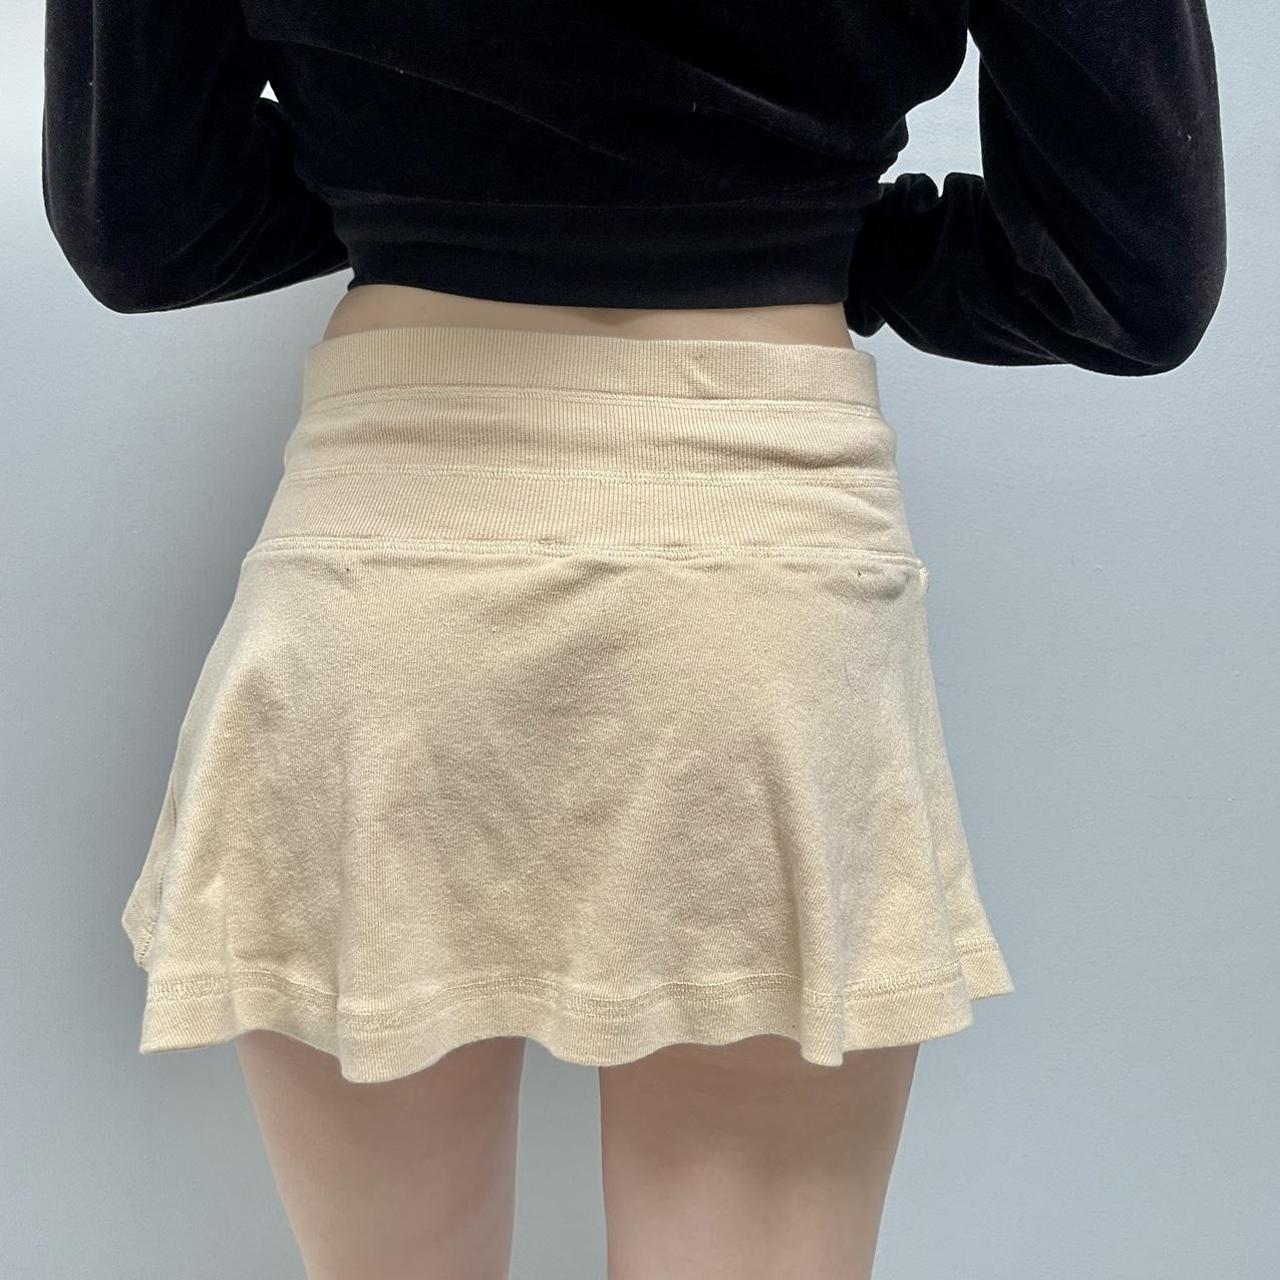 Bebe Women's Cream and Tan Skirt (4)